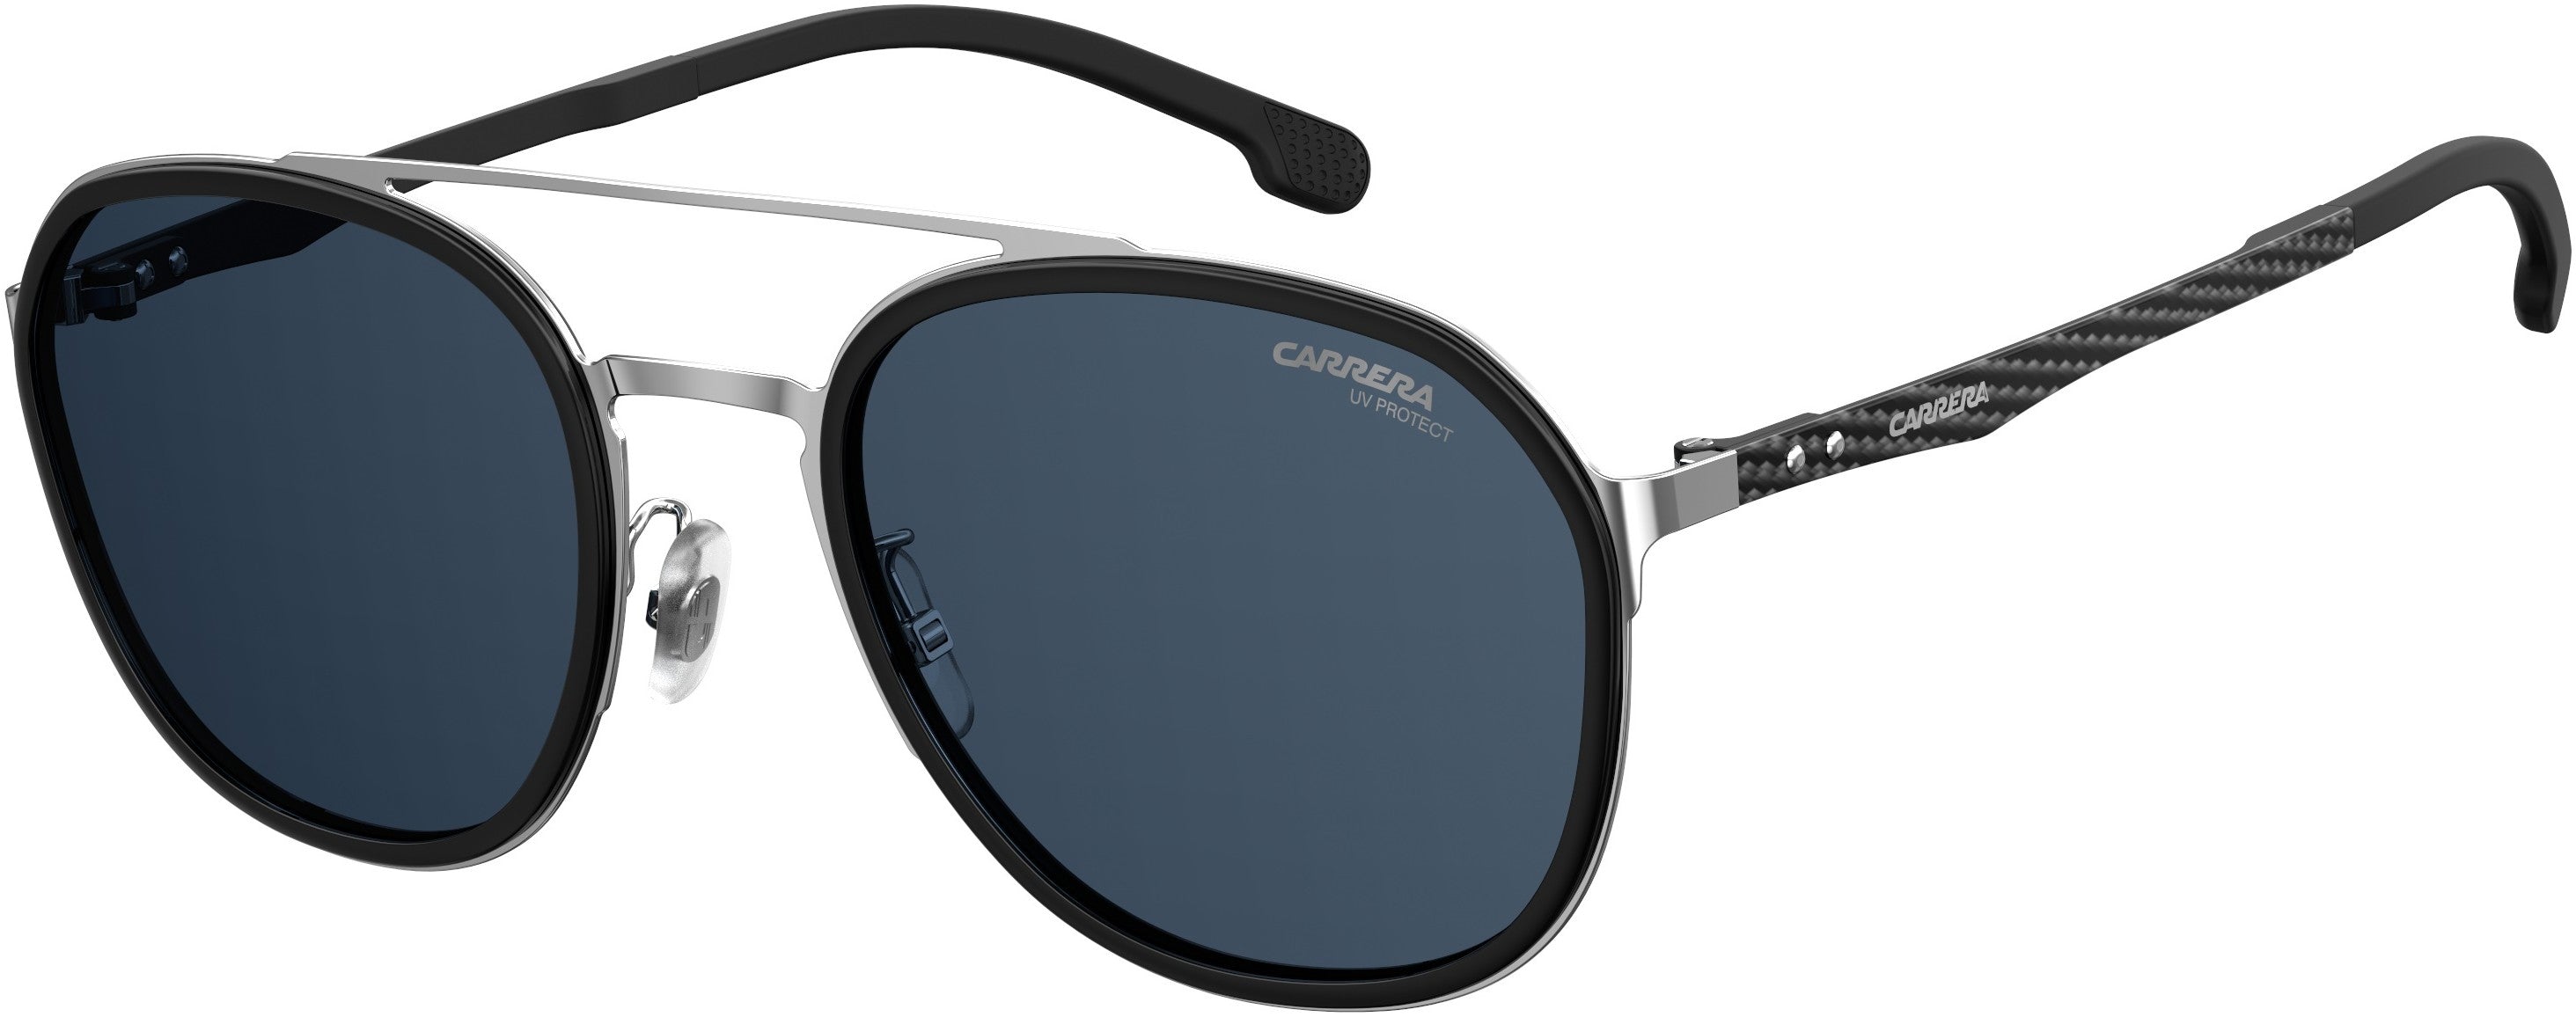  Carrera 8033/gs Oval Modified Sunglasses 0010-0010  Palladium (KU Blue)